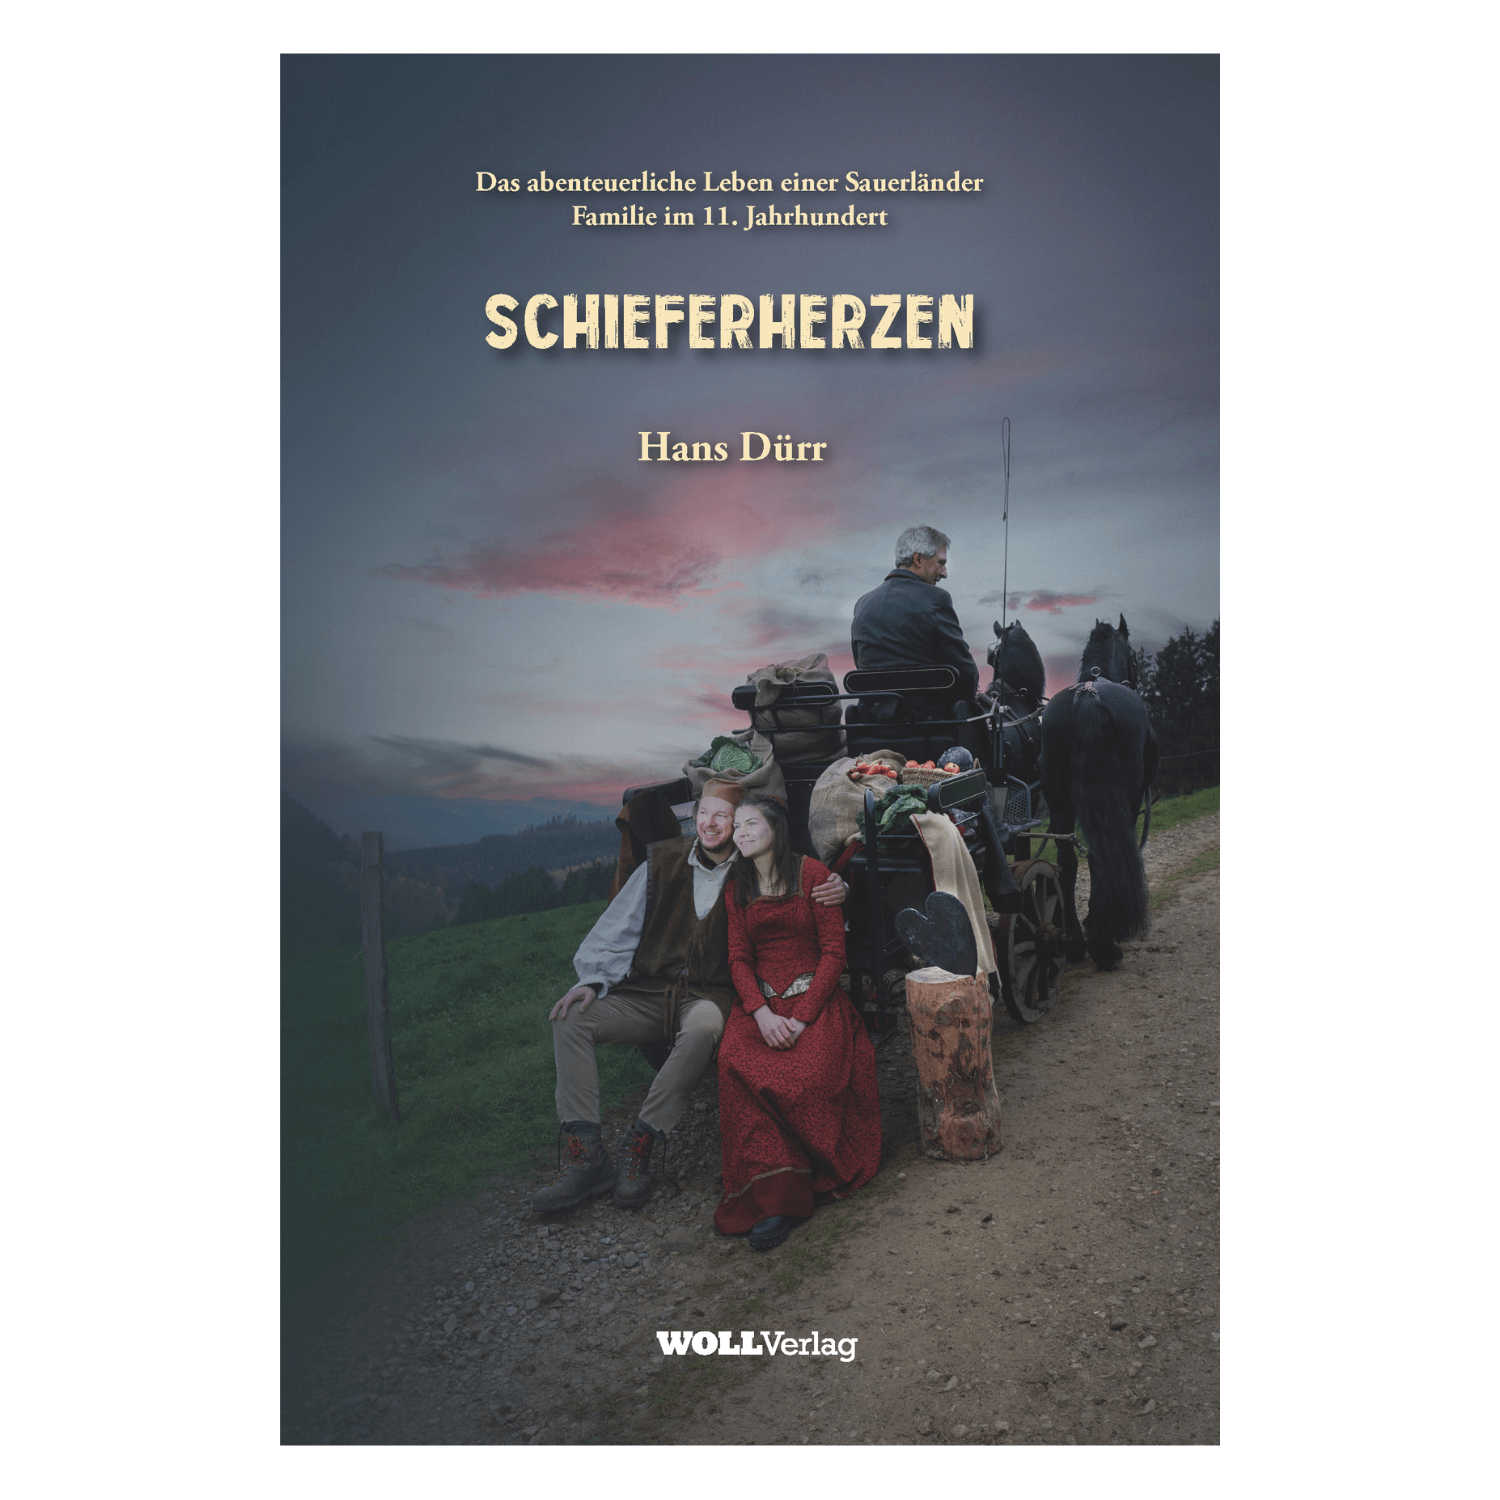 Schieferherzen (Hans Dürr)